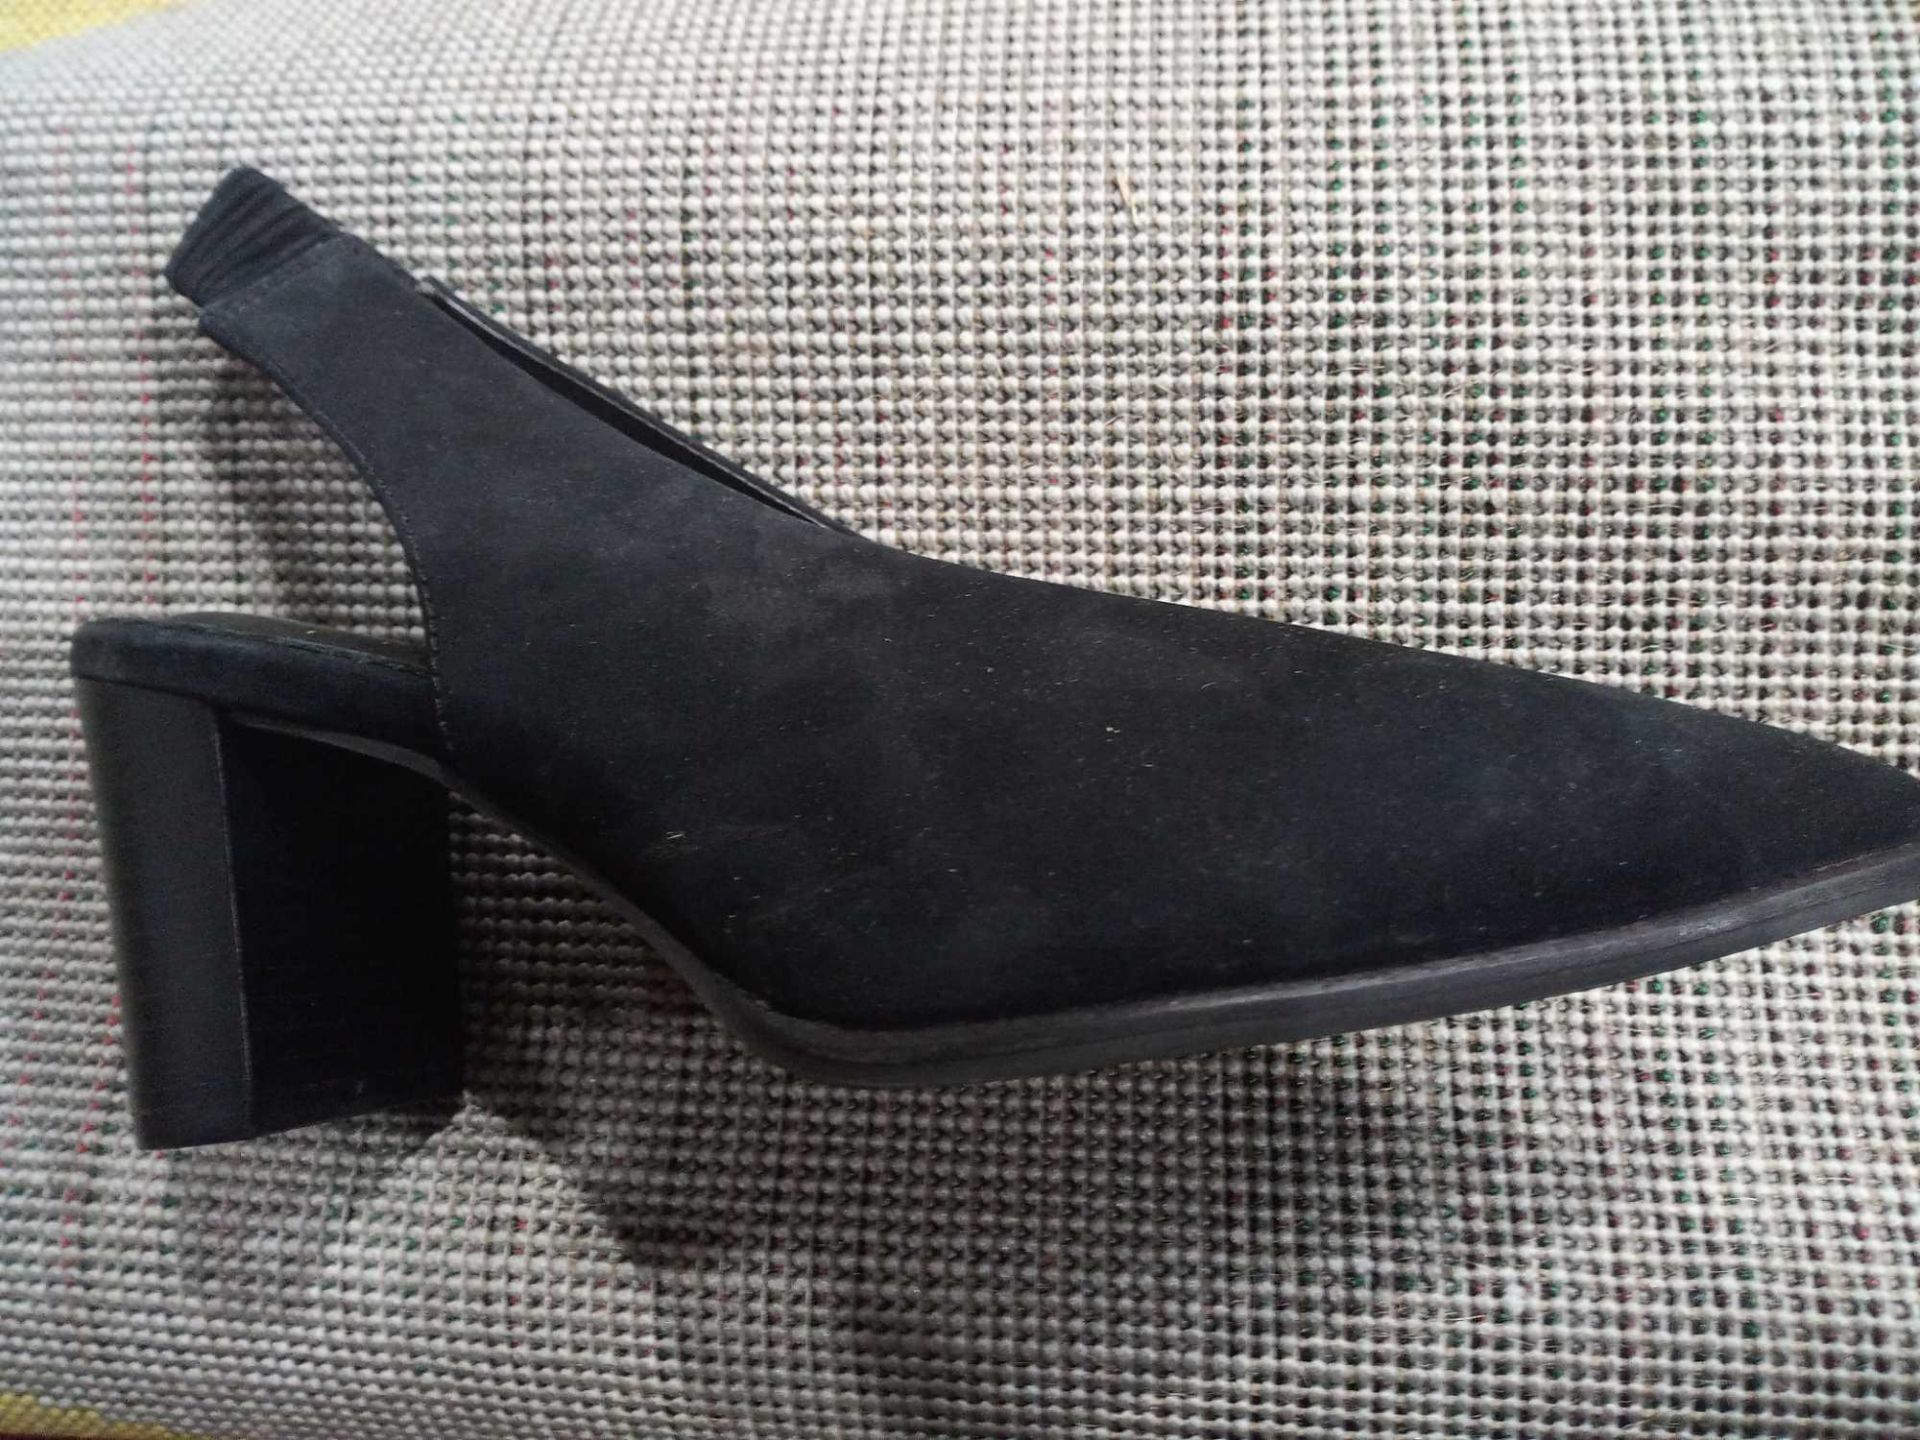 RRP £60 Boxed Size Uk 4 Ladies Black Suede Heels - Image 2 of 2